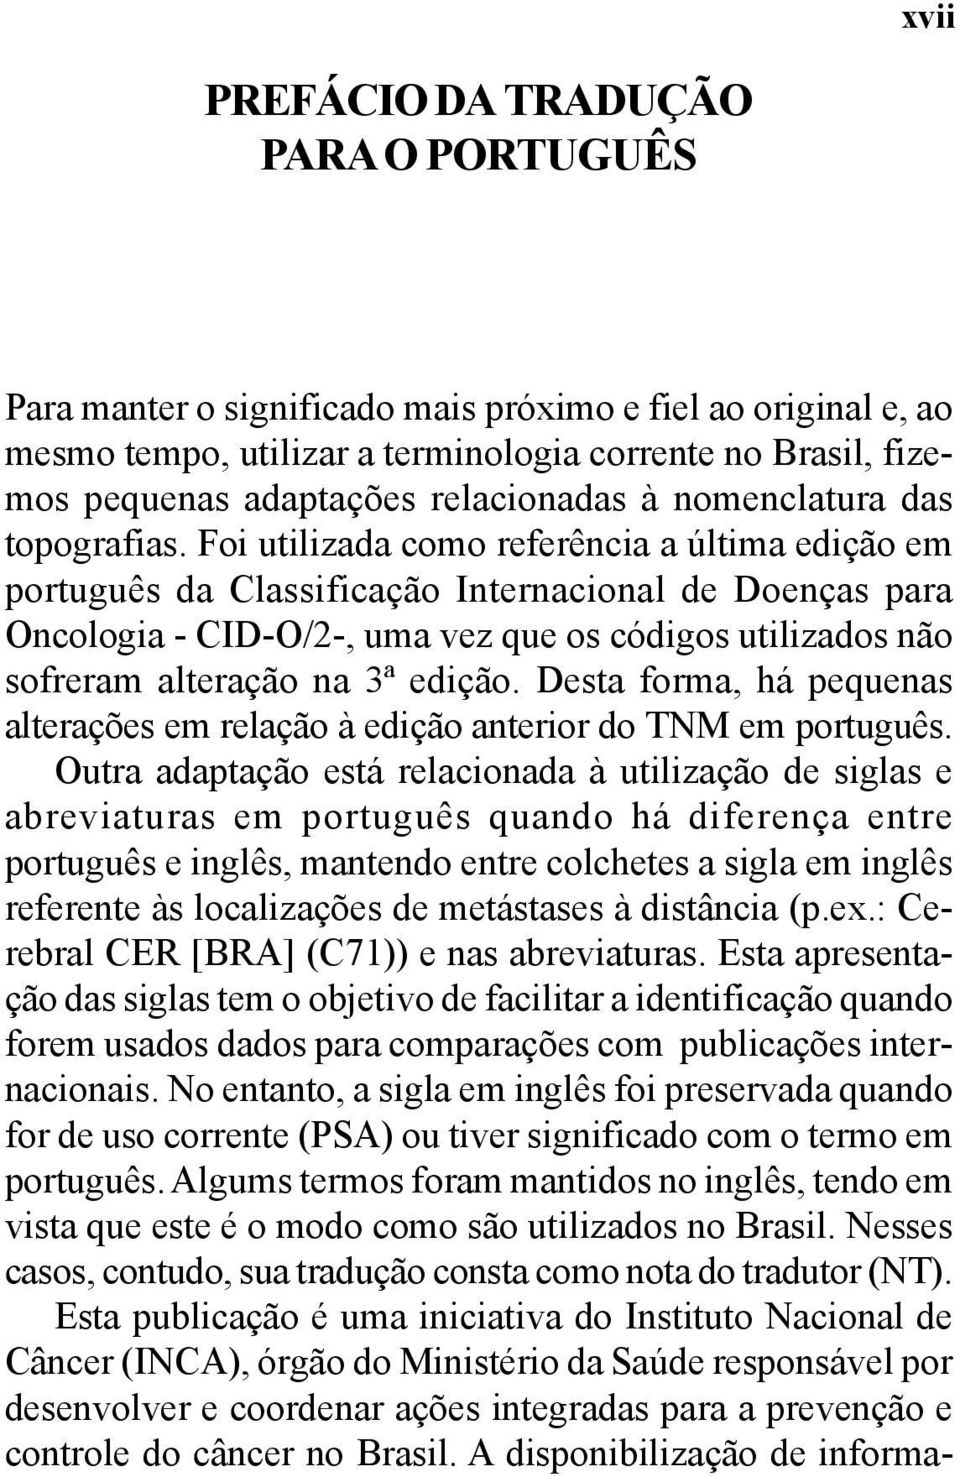 Foi utilizada como referência a última edição em português da Classificação Internacional de Doenças para Oncologia - CID-O/2-, uma vez que os códigos utilizados não sofreram alteração na 3ª edição.